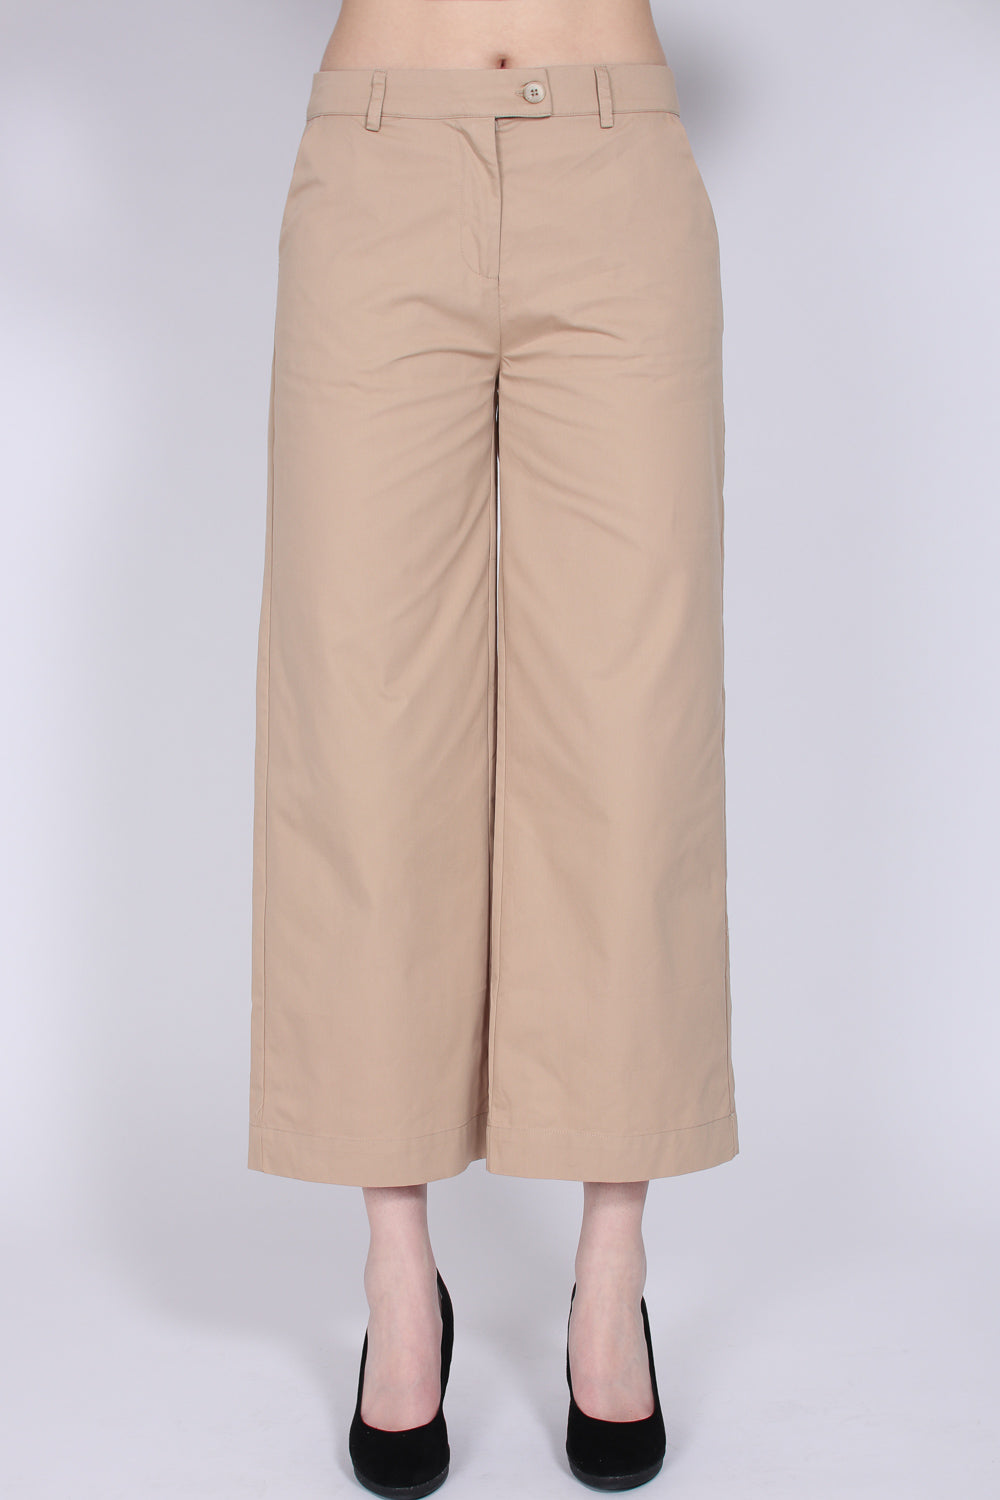 Kaki MW Trousers - Sesam - Second Female - Bukser & Shorts - VILLOID.no